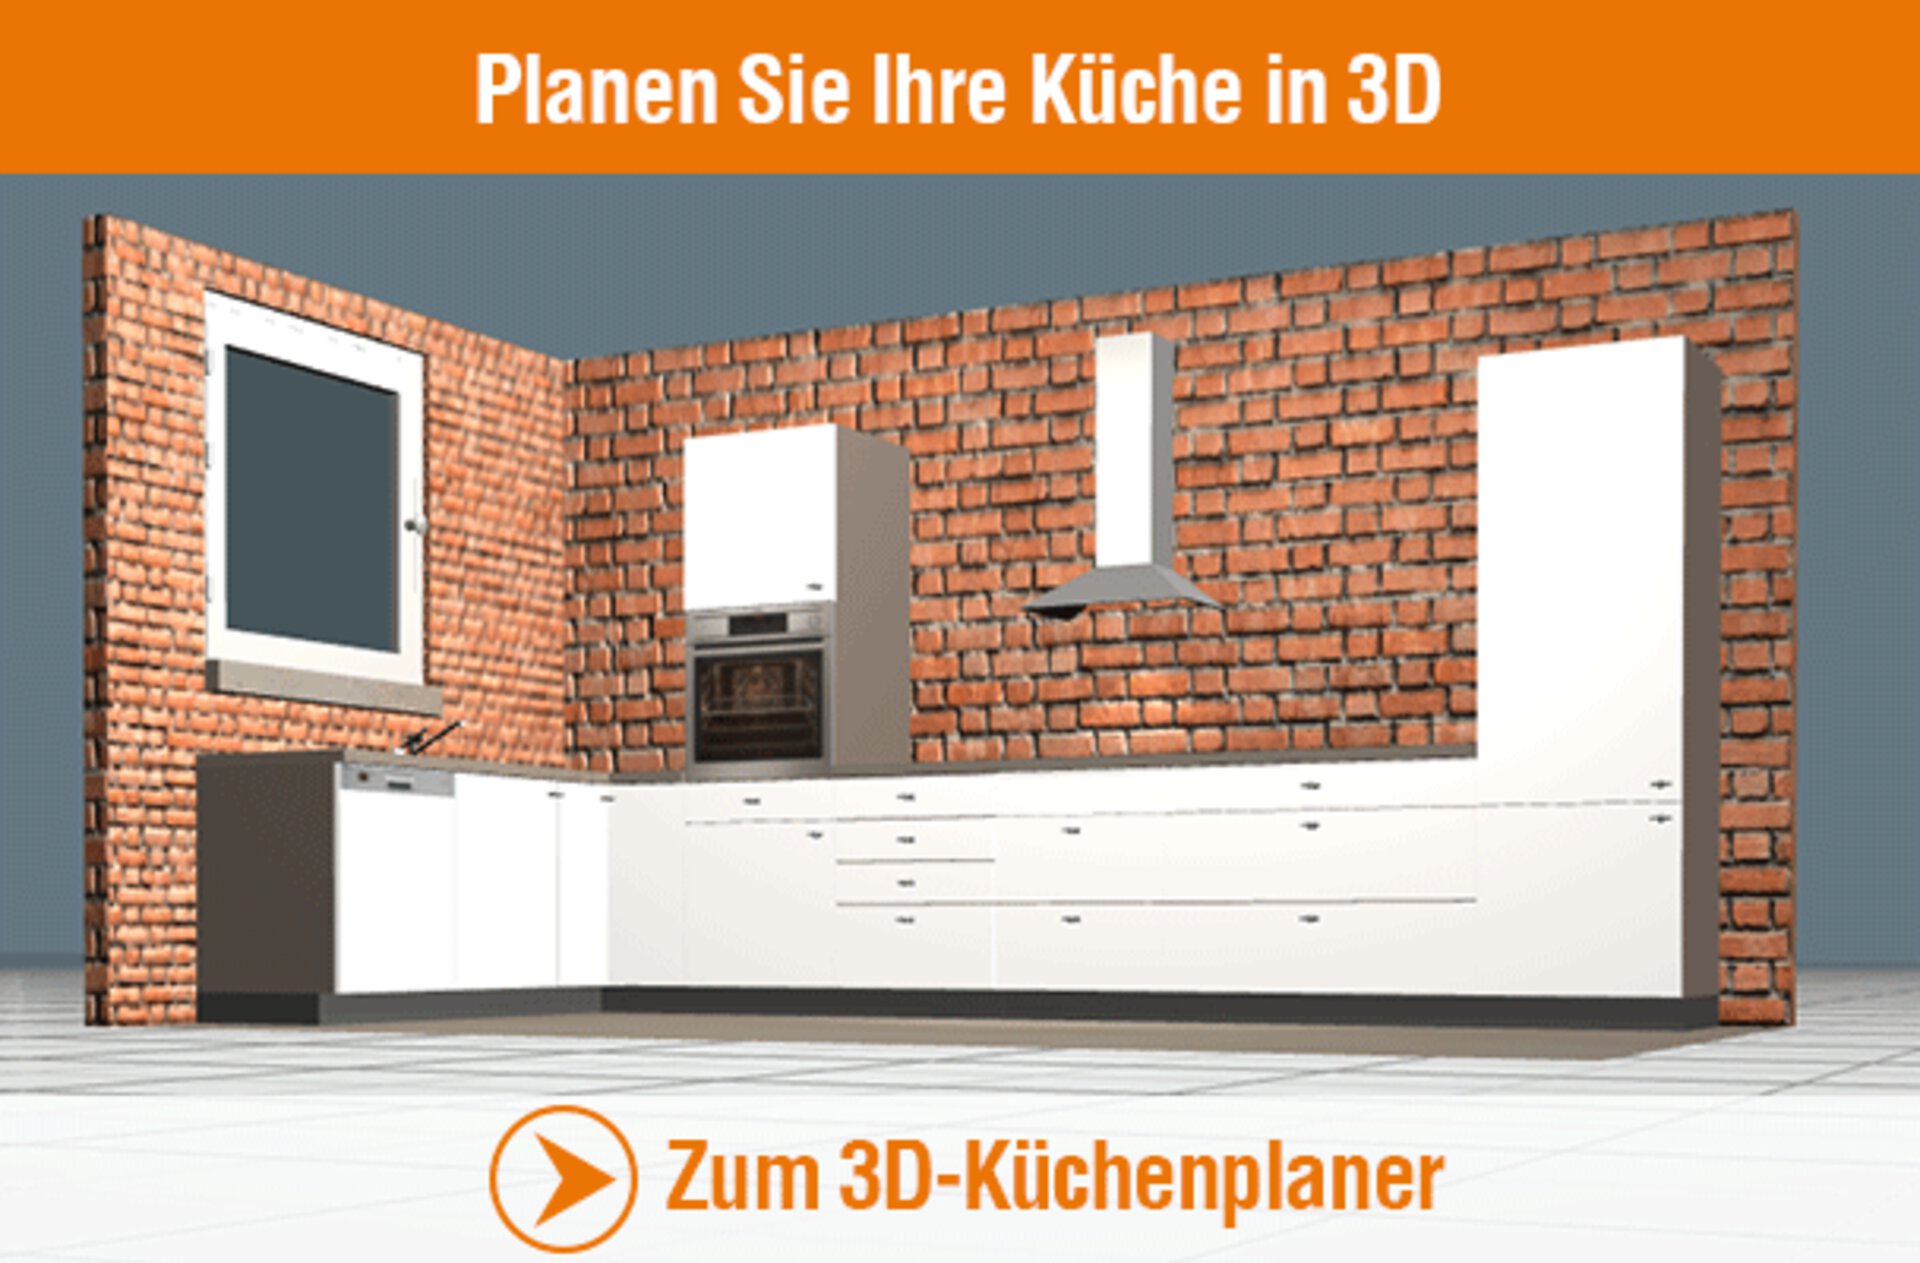 Planen Sie Ihre Küche in 3D. LInkbild zum externen 3D-Küchenplaner.